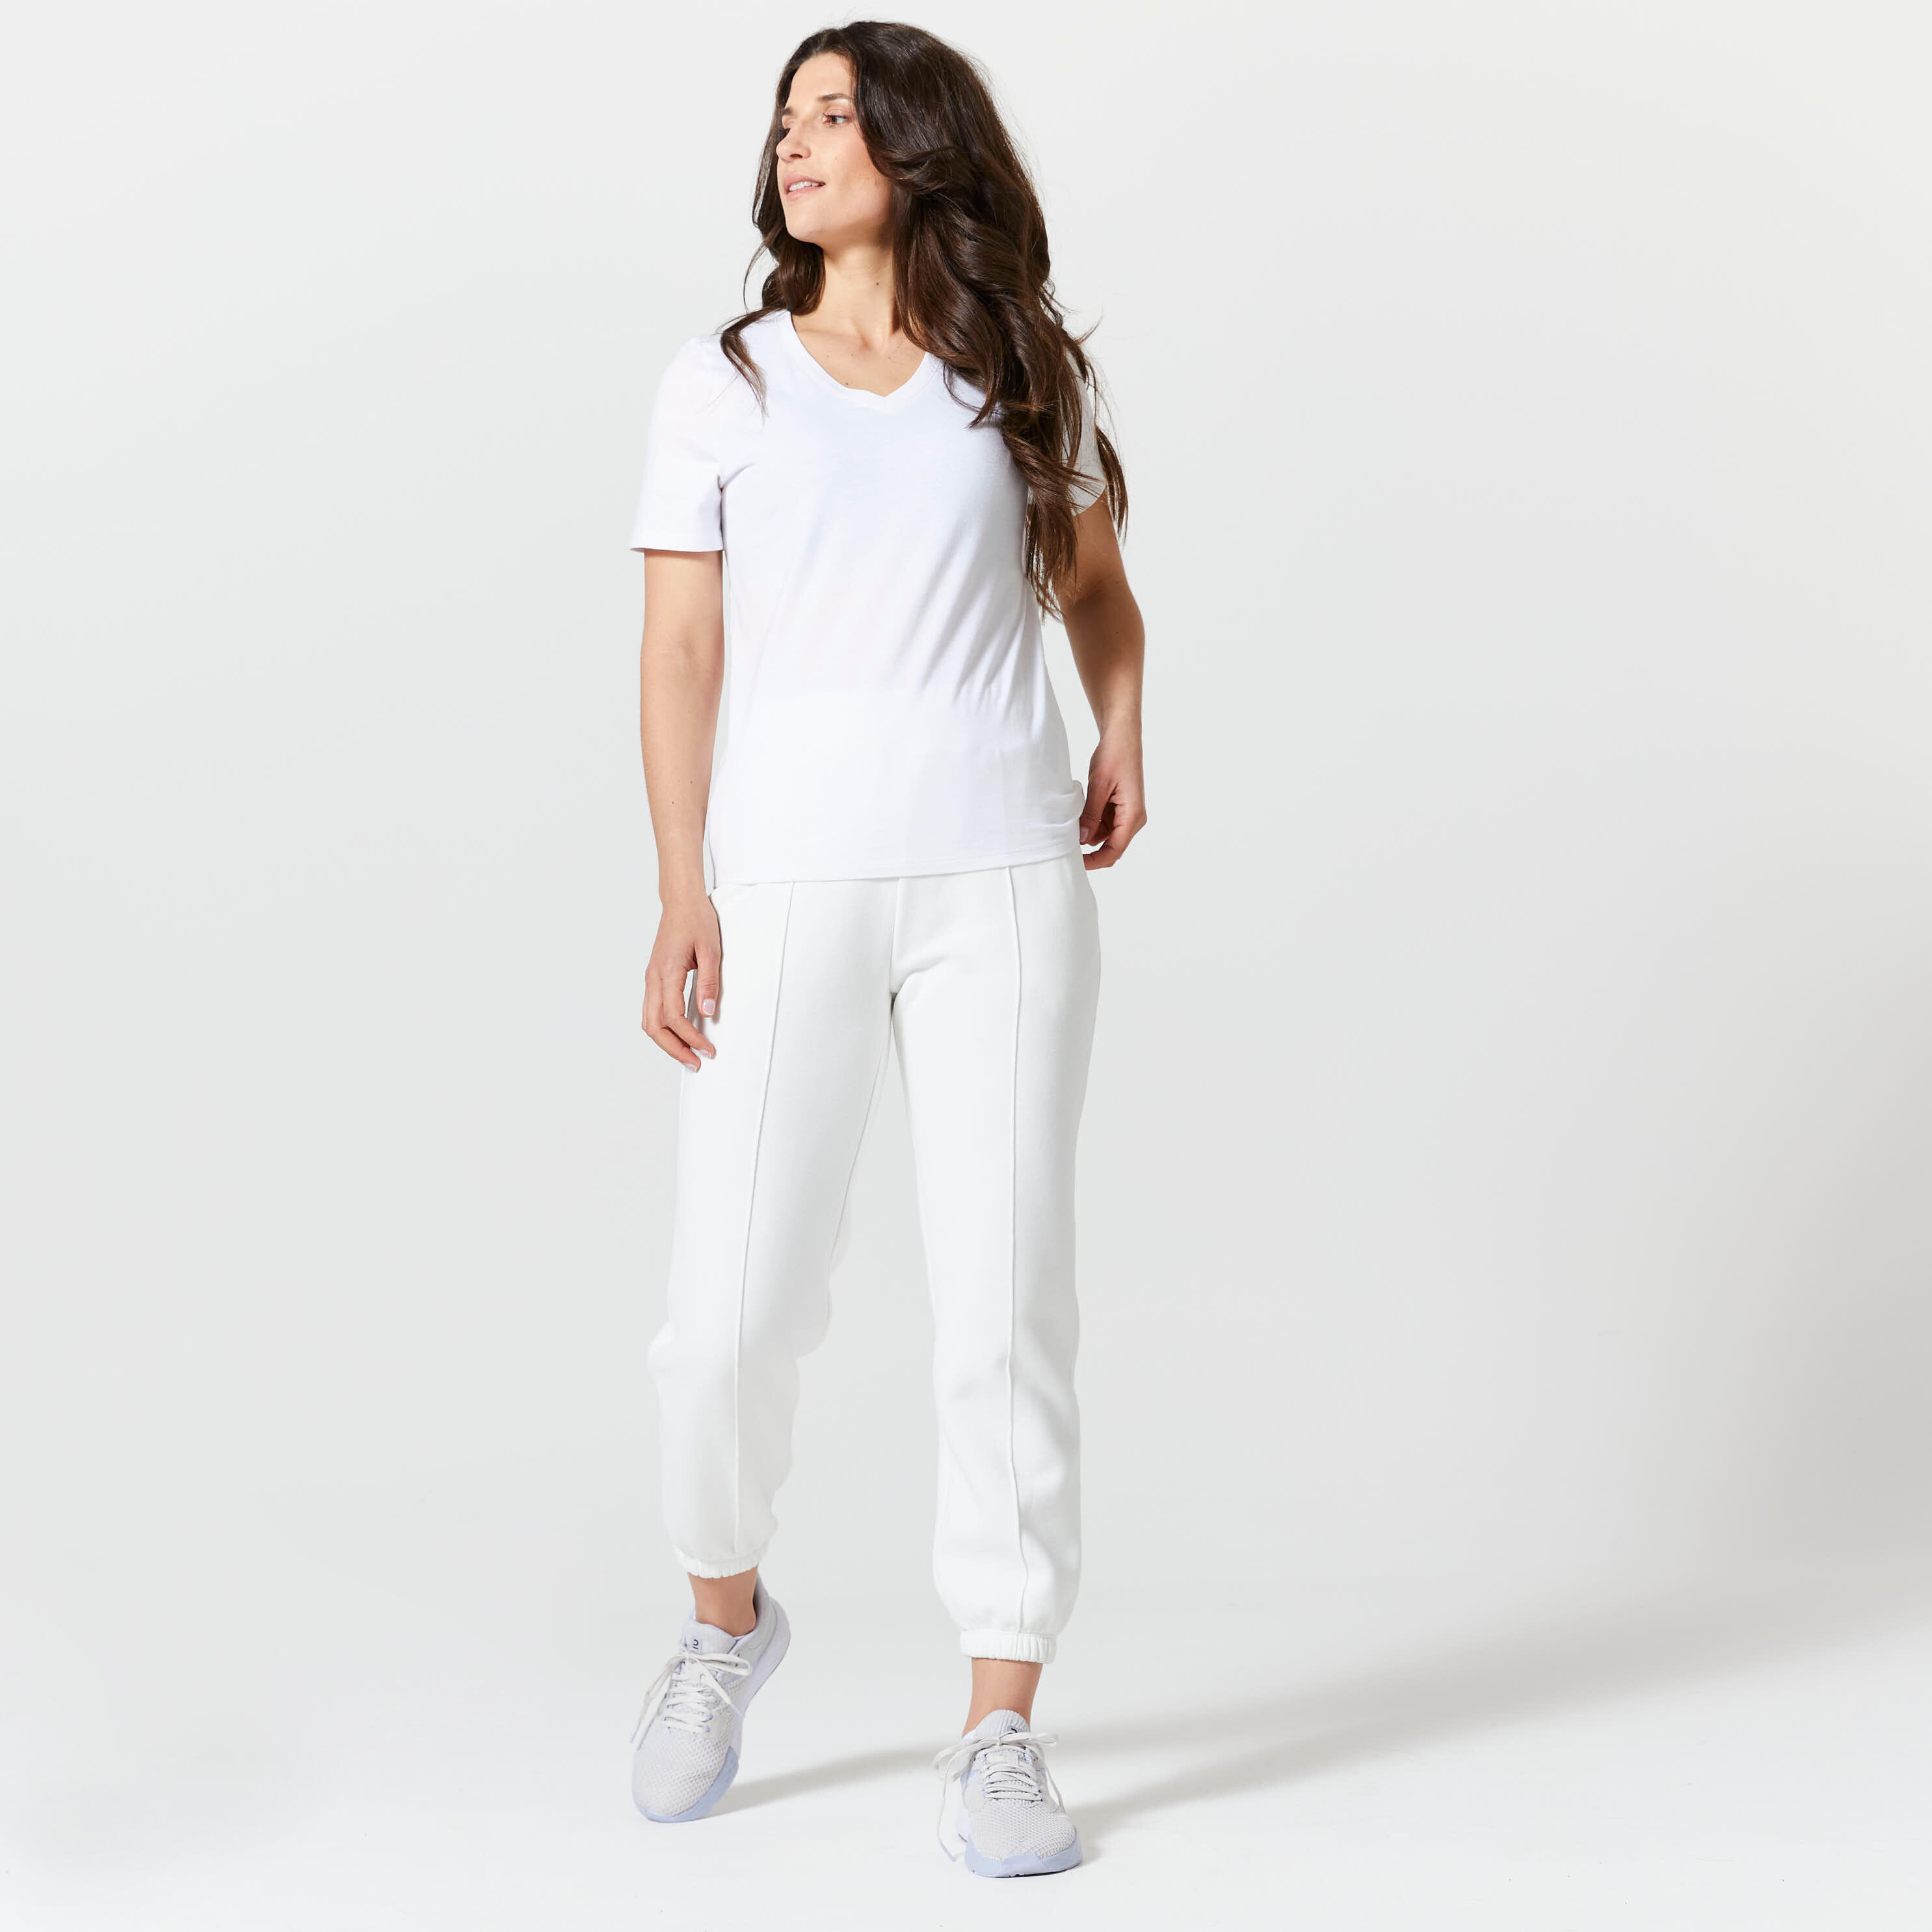 Women's V-Neck Fitness T-Shirt 500 - White 2/4